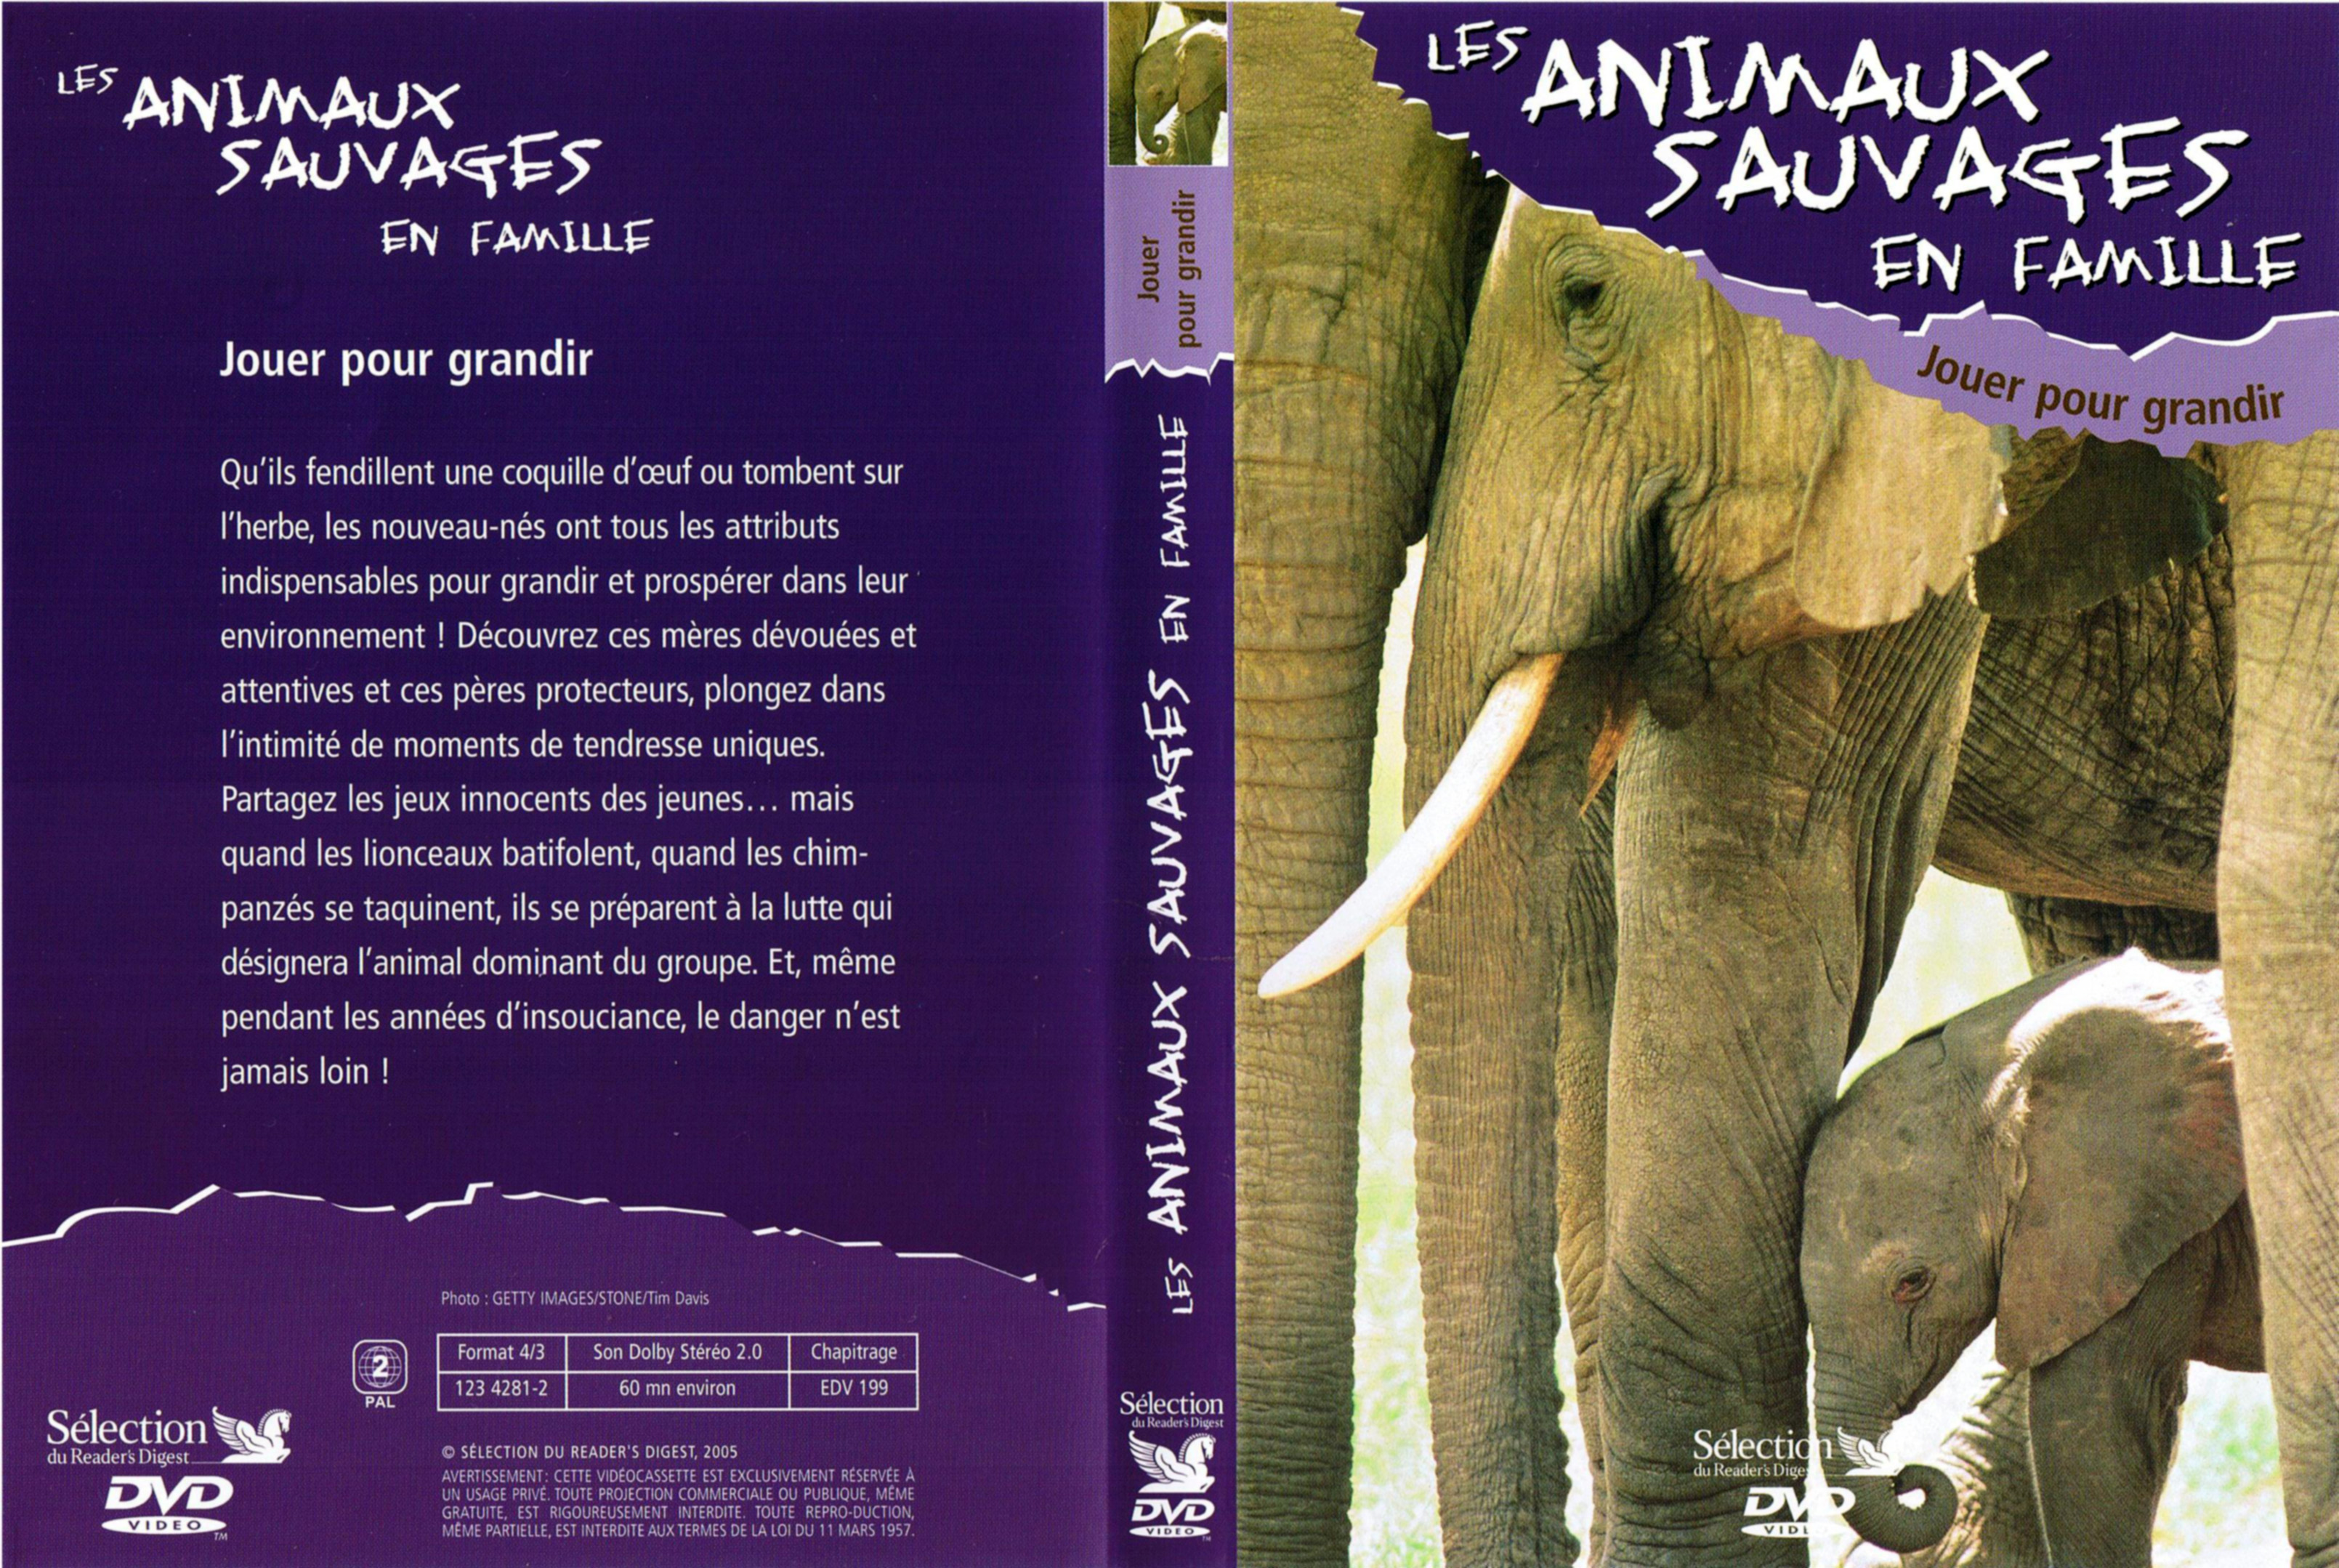 Jaquette DVD Les animaux sauvages en famille